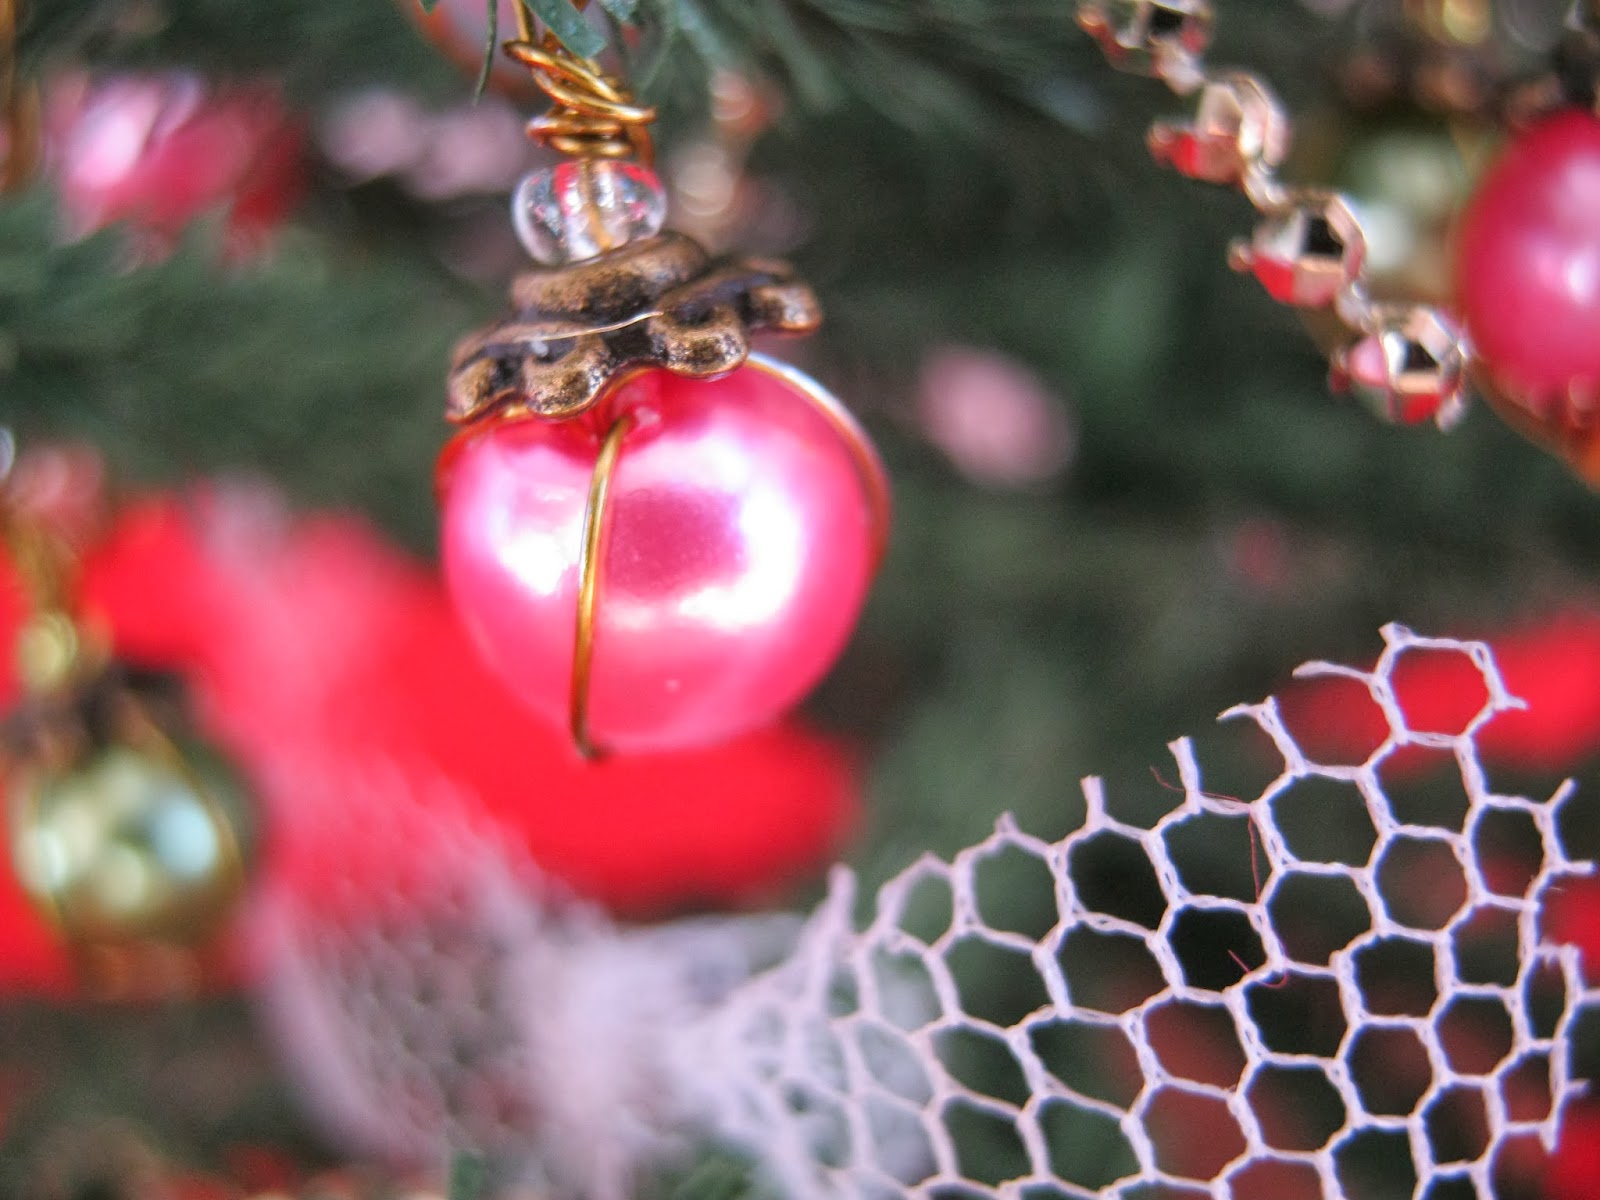 A Fairytale come true: Christmas Balls.